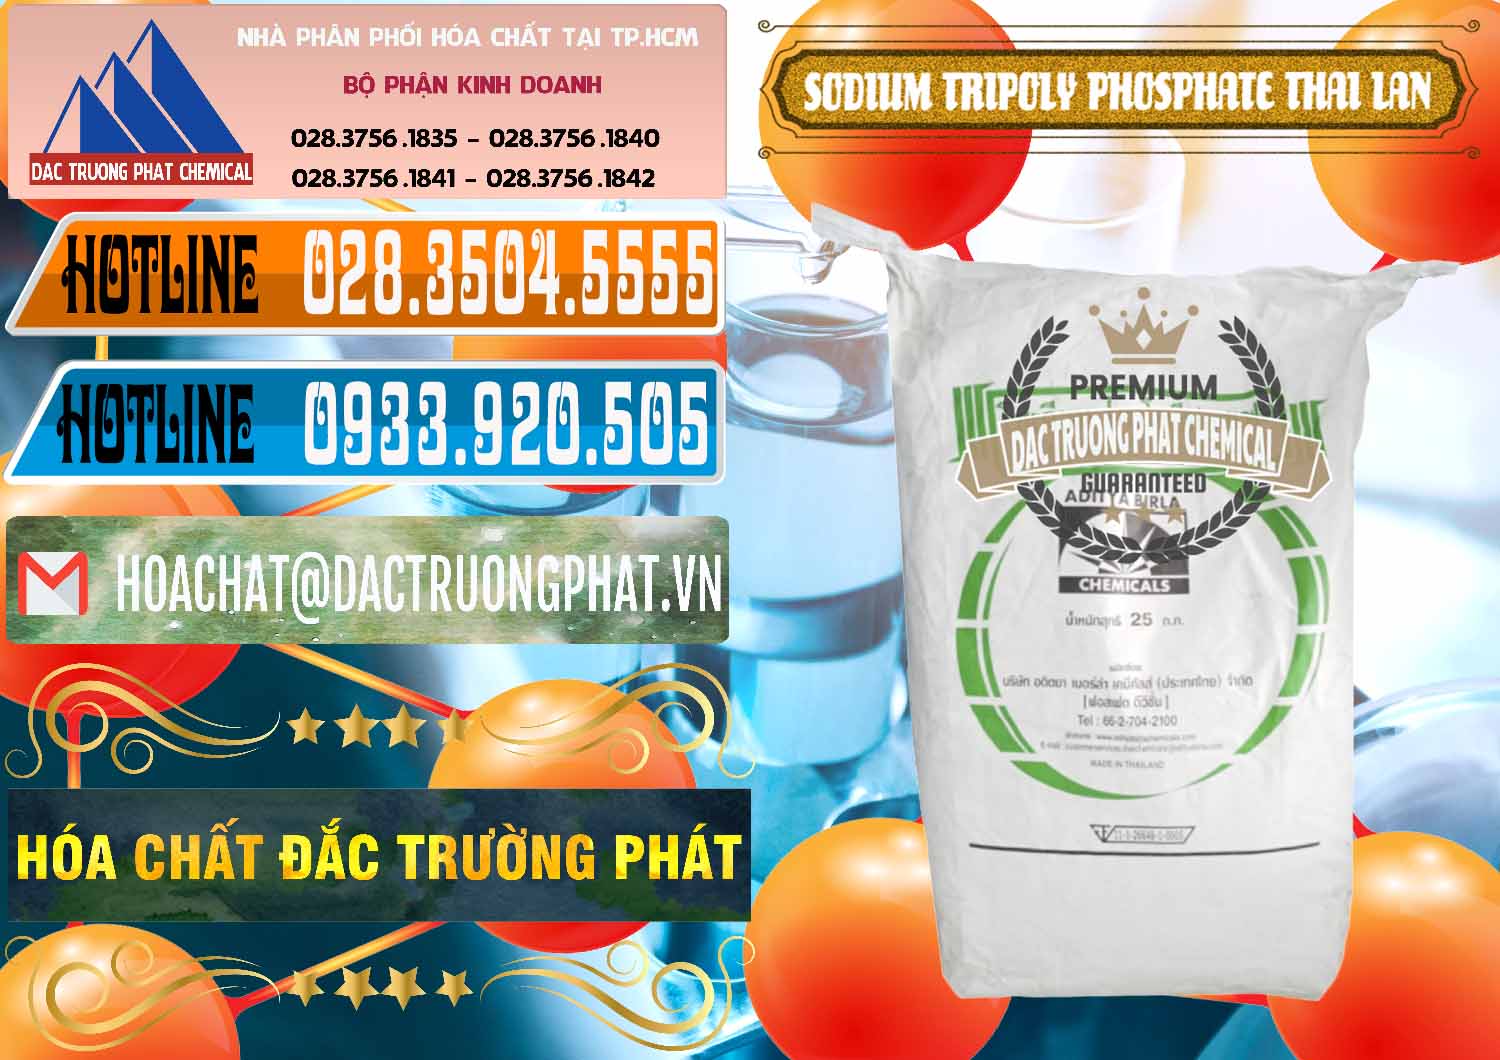 Cty chuyên bán ( phân phối ) Sodium Tripoly Phosphate - STPP Aditya Birla Grasim Thái Lan Thailand - 0421 - Công ty bán - cung cấp hóa chất tại TP.HCM - stmp.net